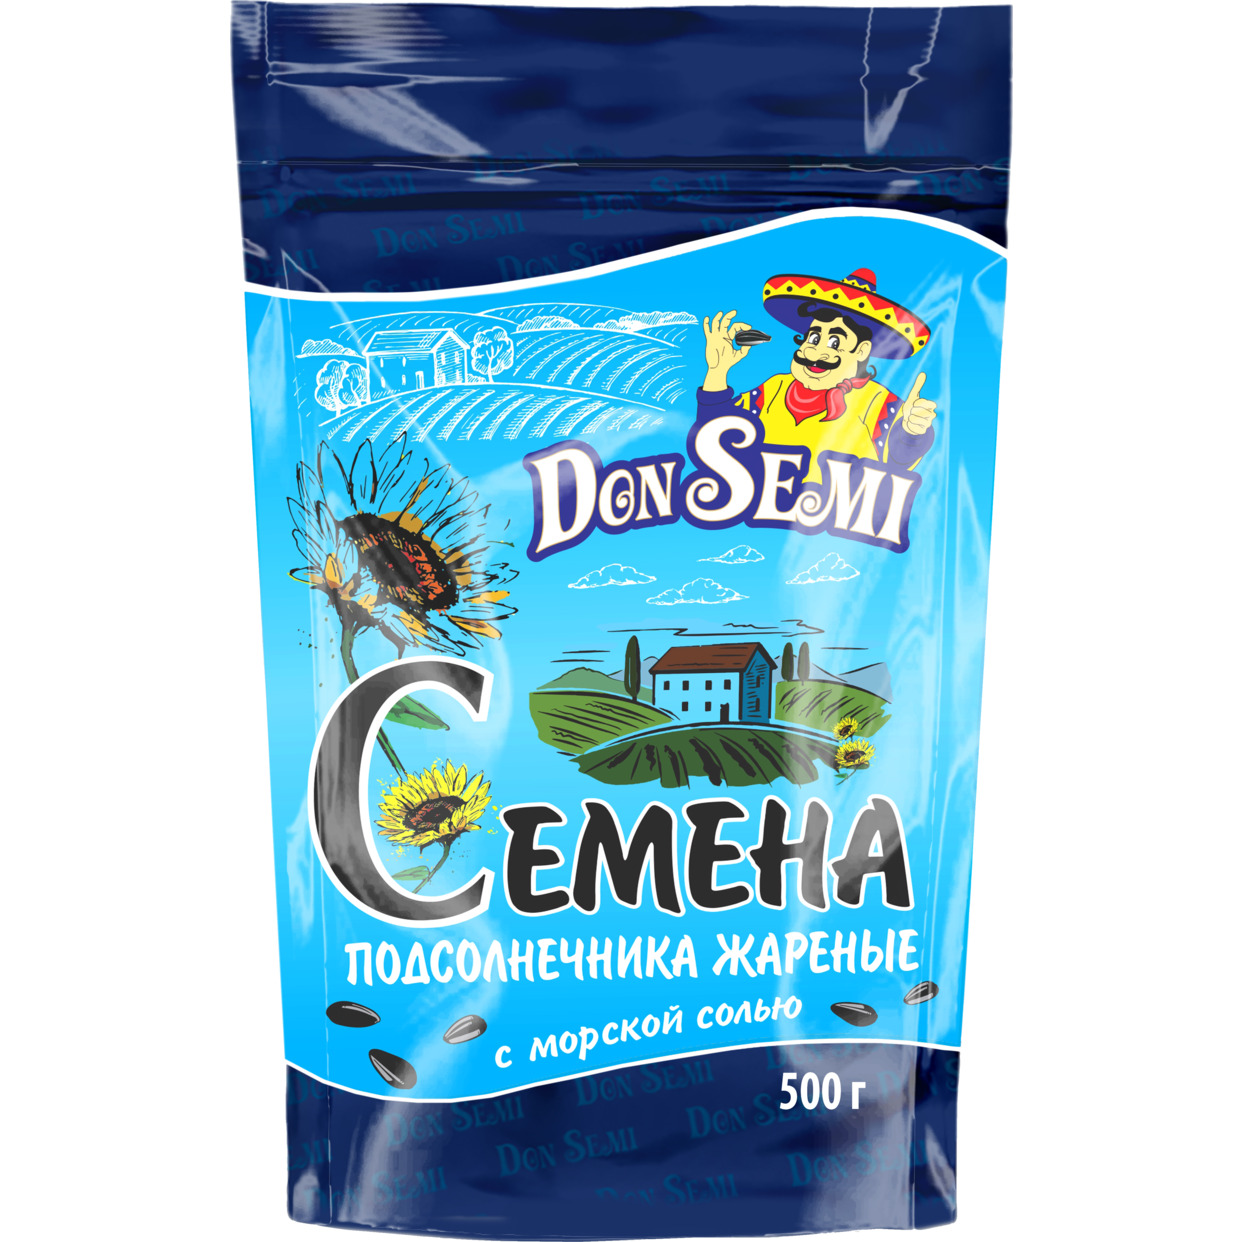 Don’ Semi Семена подсолнечника жареные с морской солью (дой-пак с замком зип-лок) 500 г по акции в Пятерочке